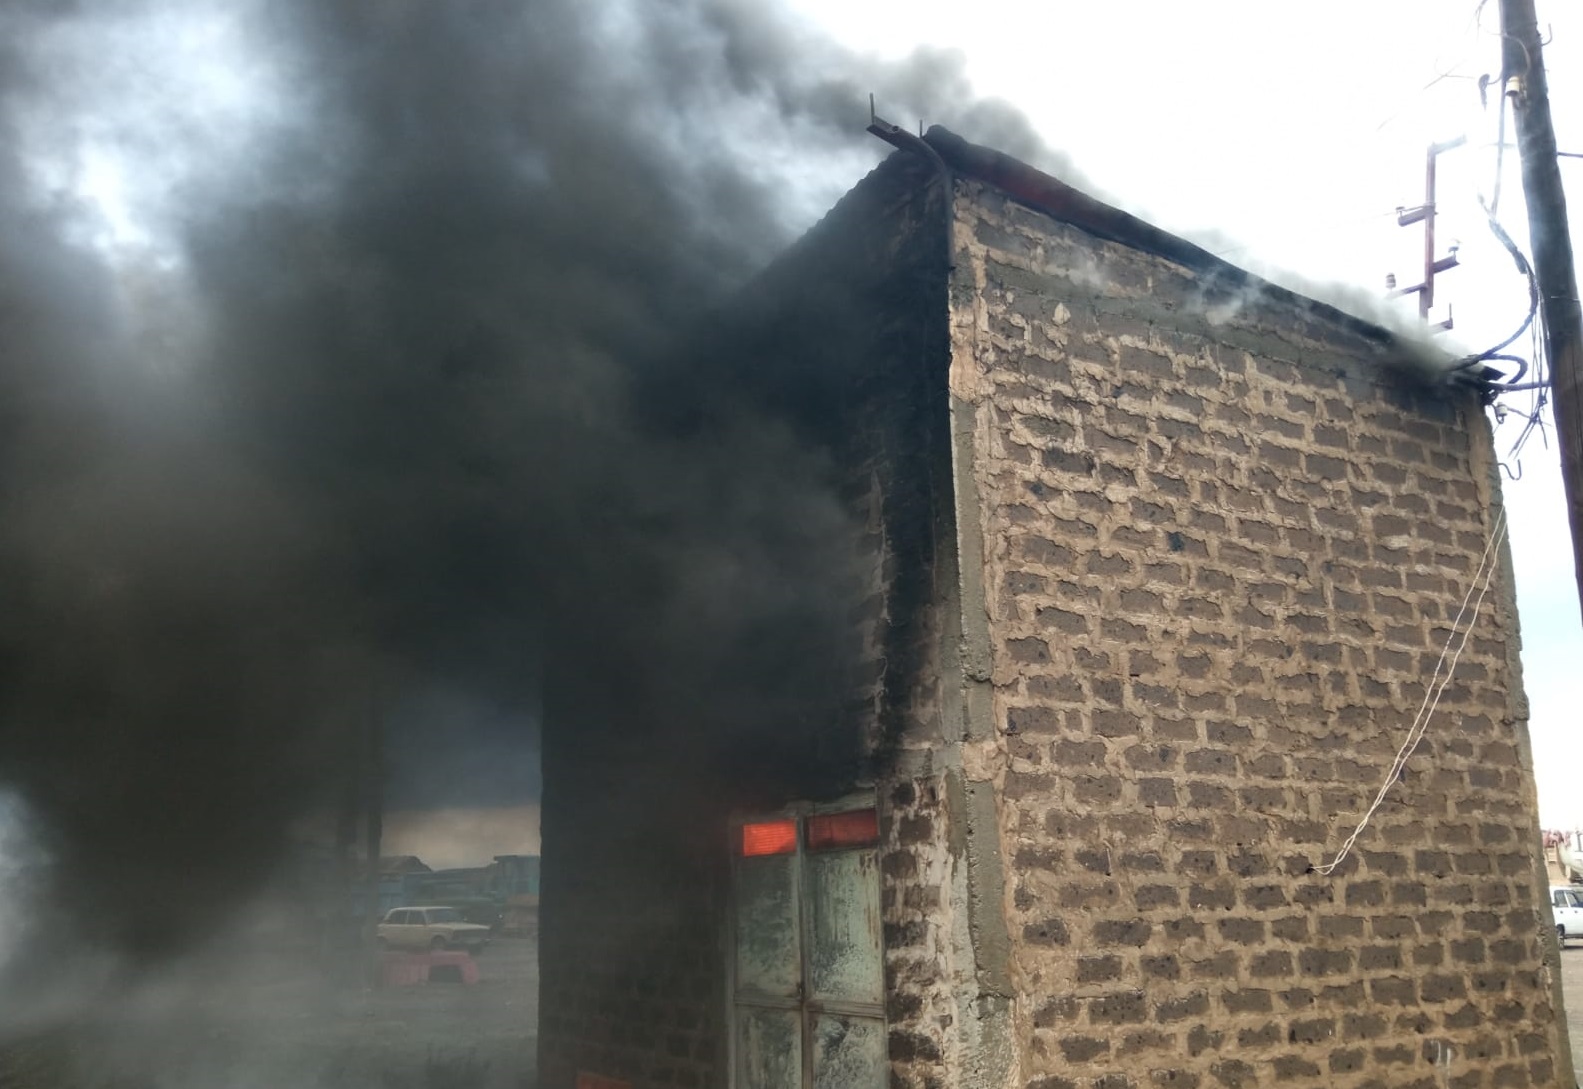 Արշալույս գյուղի ասֆալտի գործարանի տարածքում այրվել է էլեկտրական ենթակայան